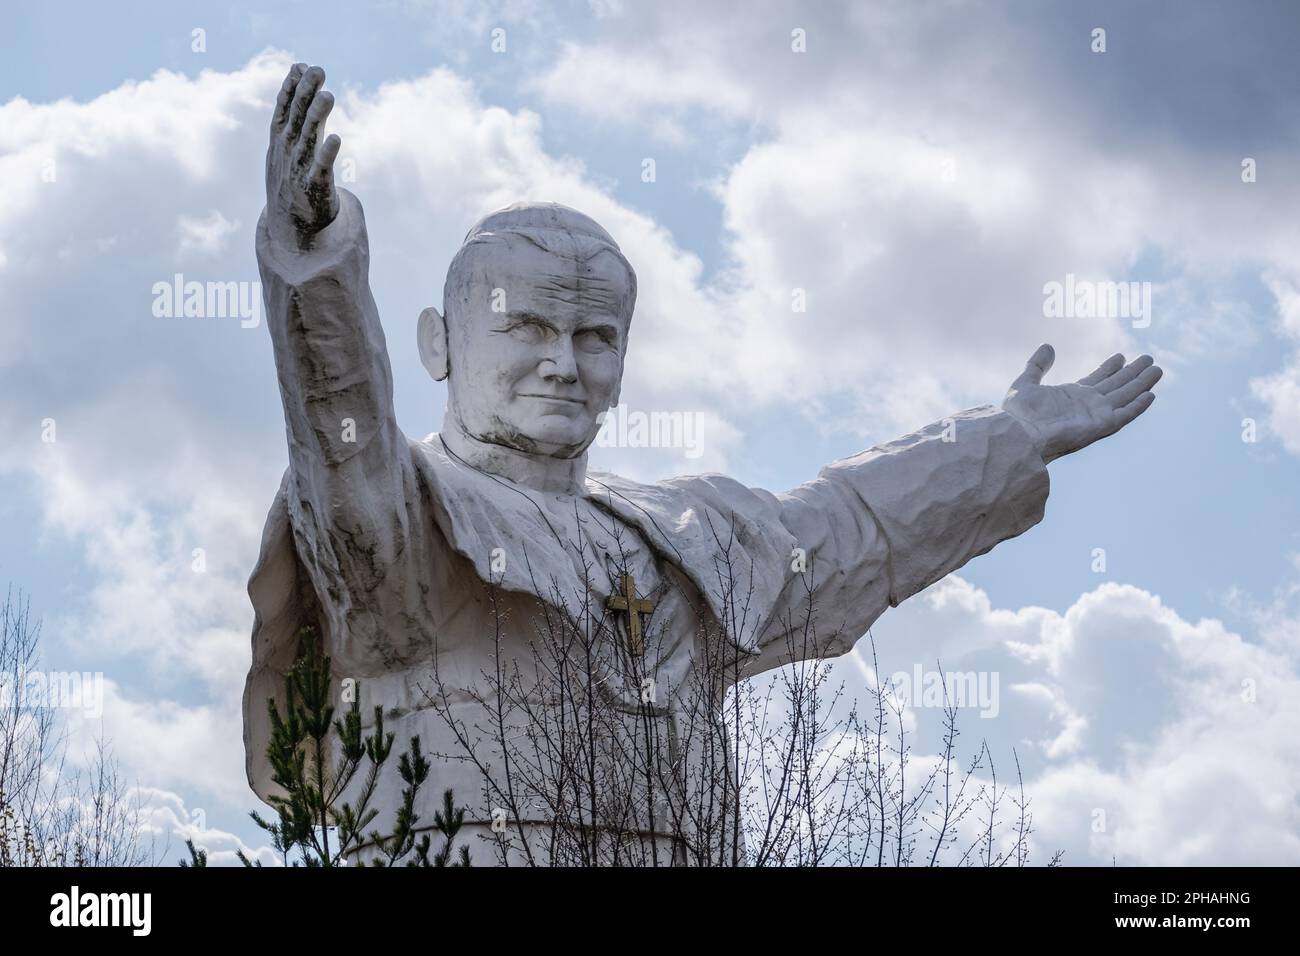 Blick auf das Denkmal für Johannes Paul II Das höchste Denkmal in Polen von Papst Johannes Paul dem Zweiten. Das Denkmal wurde 2013 erbaut und in Czestochowa platziert. Heute ist es vergessen. Keine Pilger kommen, um es zu sehen. Es bleibt allein unter den Bäumen. Stockfoto